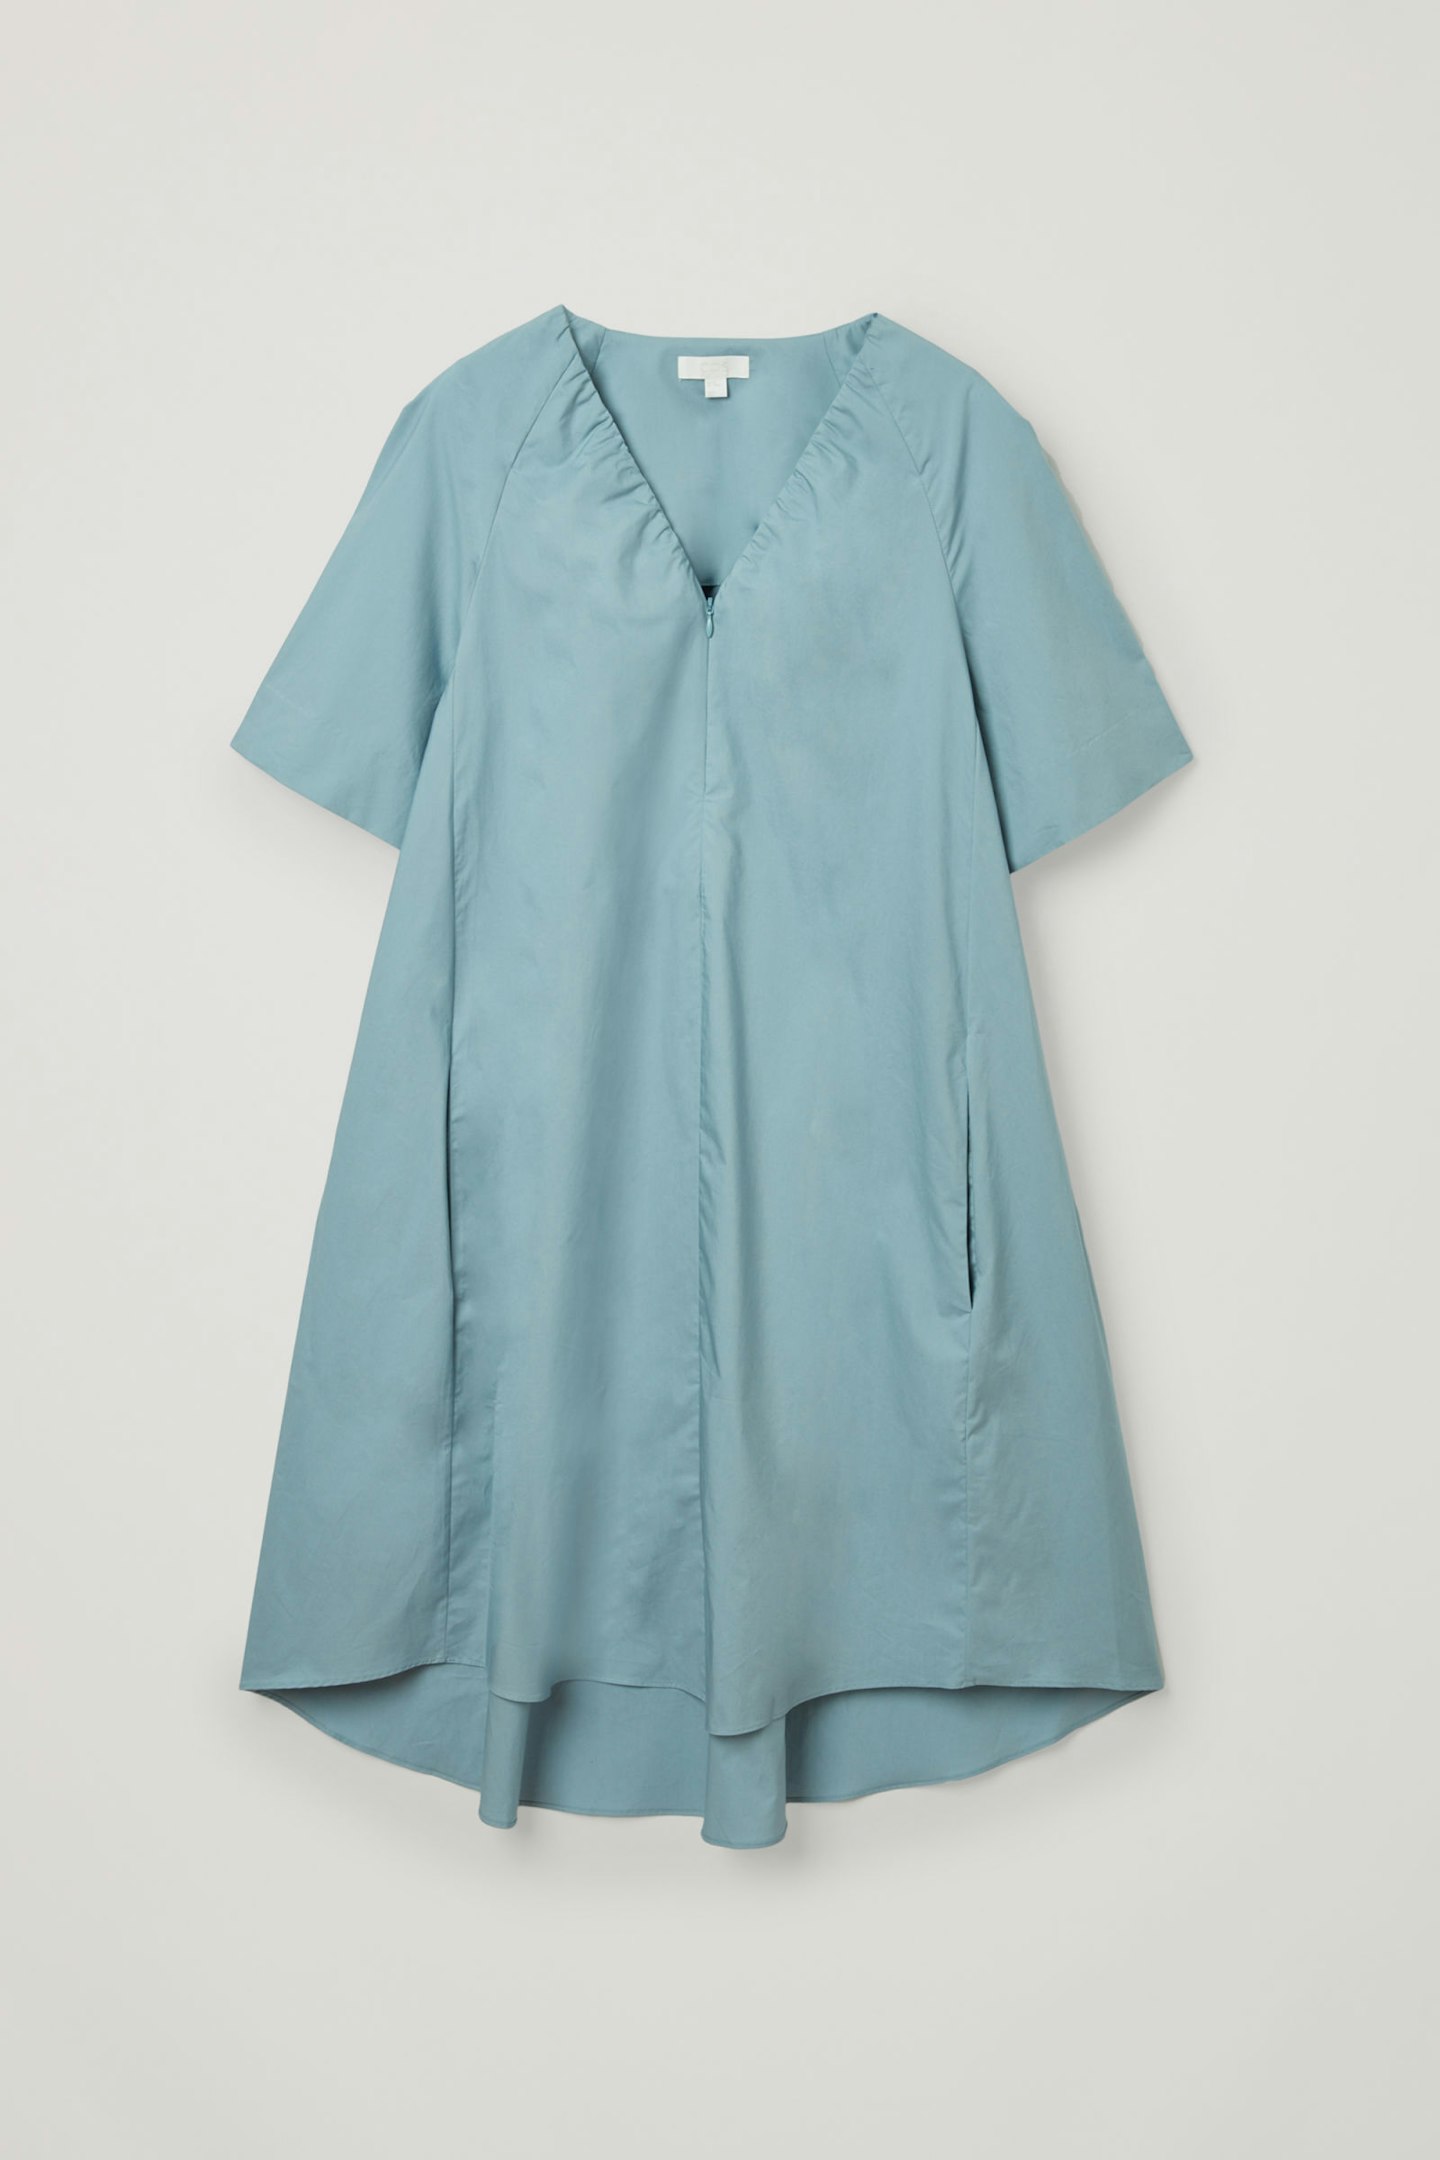 COS, V-Neck Cotton Dress, £69